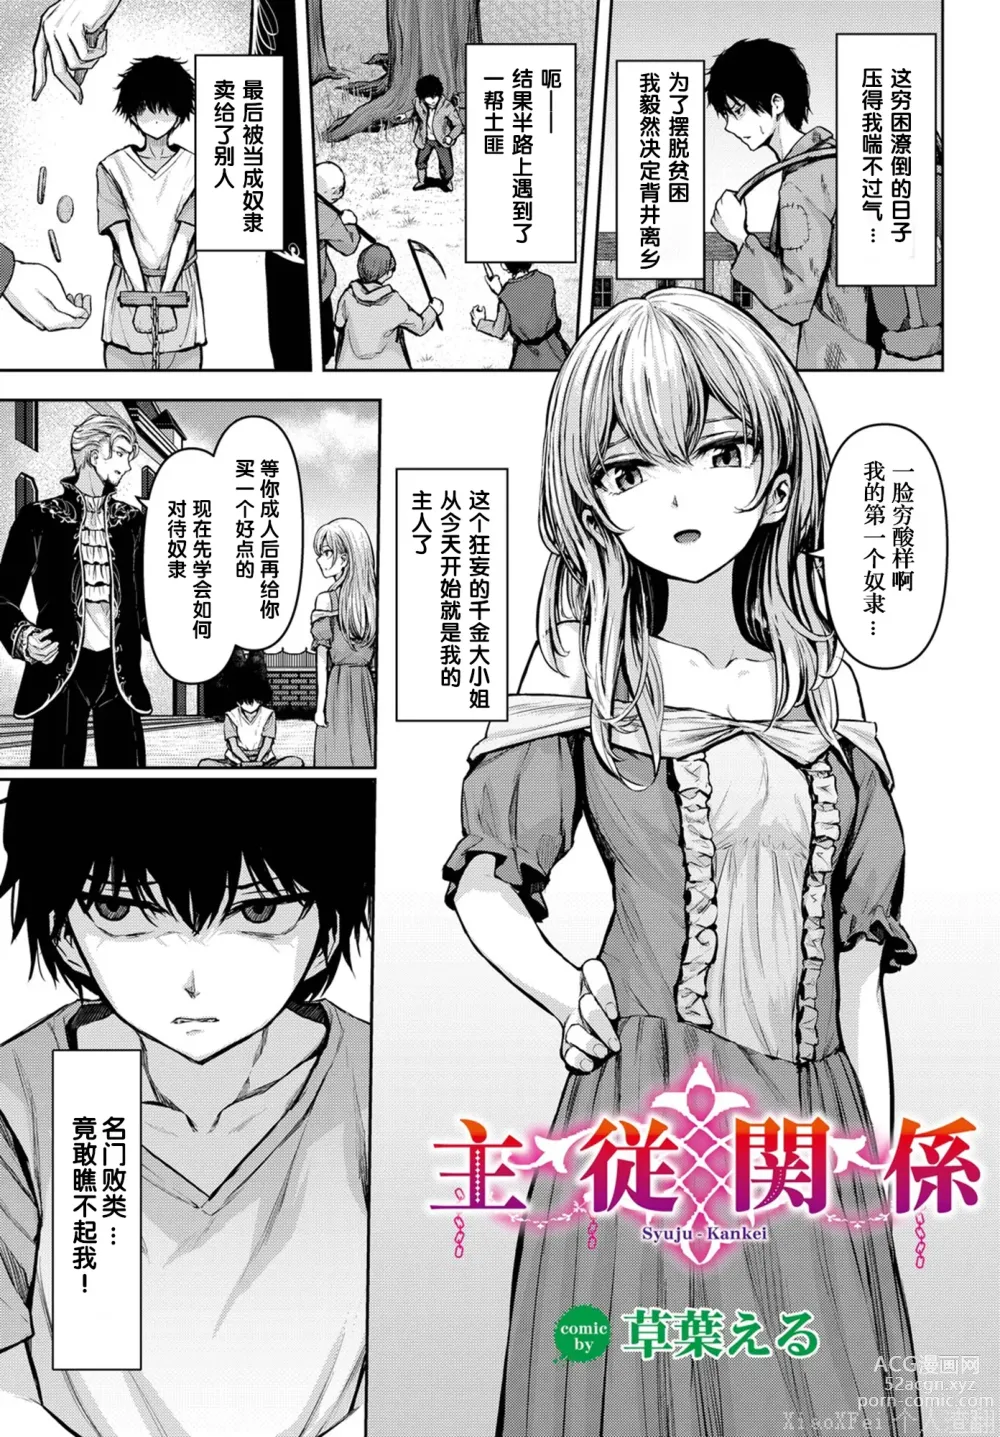 Page 1 of manga Syuju - Kankei